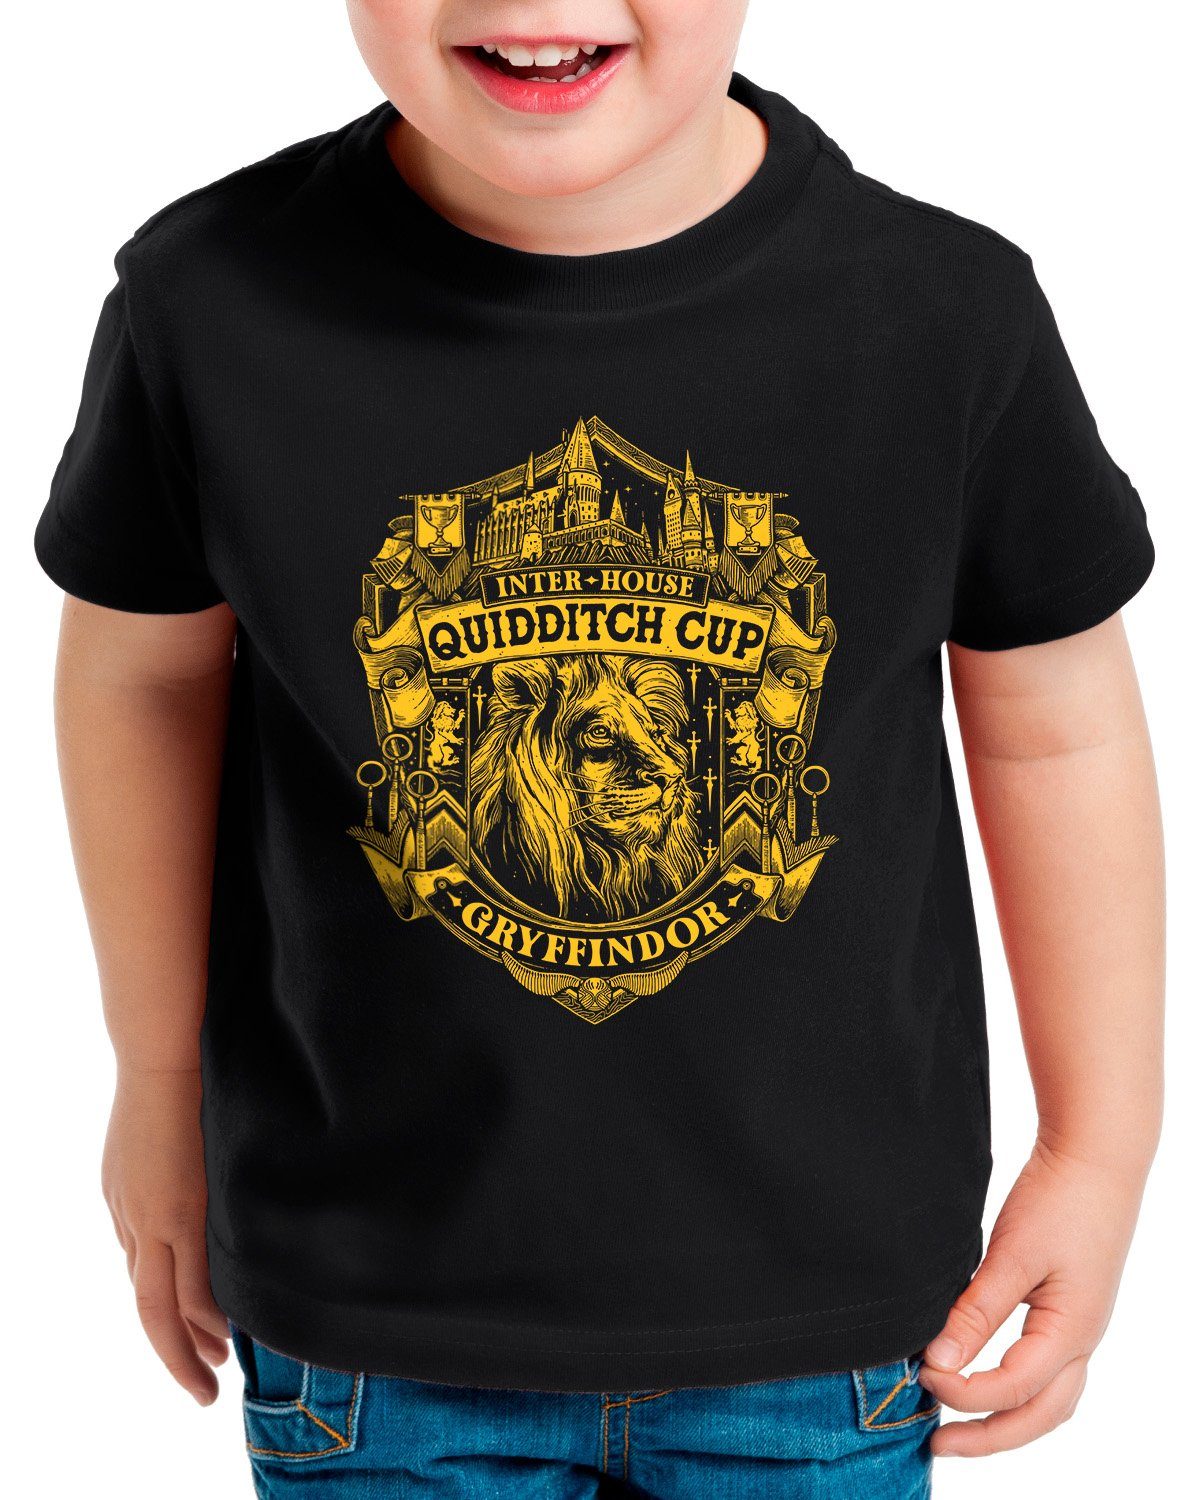 hogwarts gryffindor der ravenclaw T-Shirt Cup Mutigen potter Print-Shirt hufflepuff slytherin style3 harry legacy Kinder